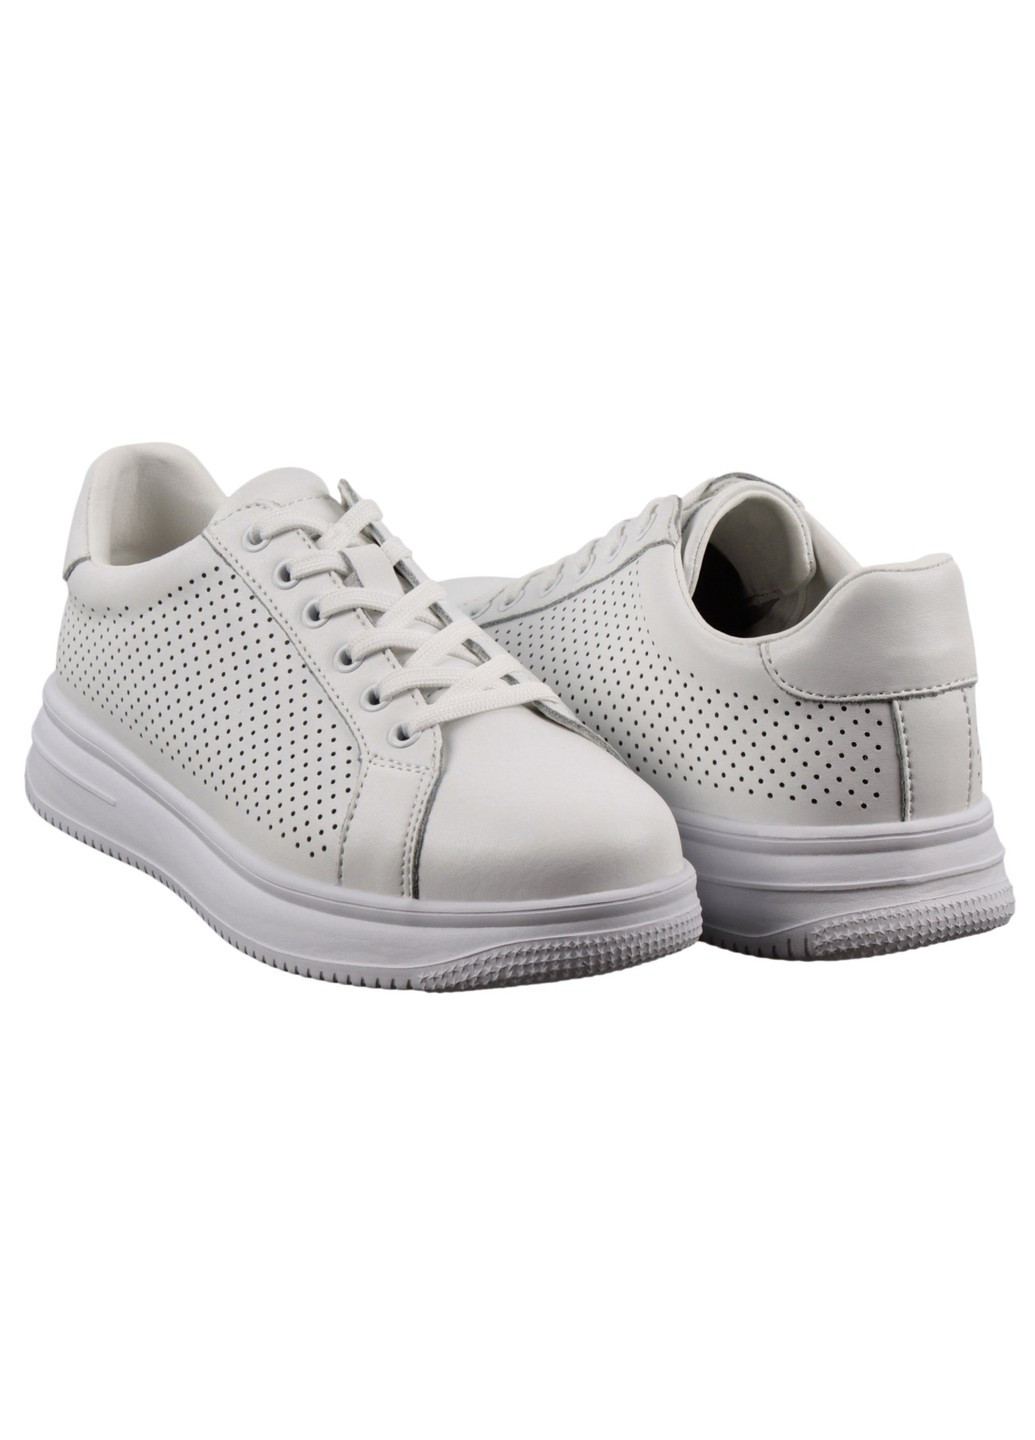 Белые демисезонные женские кроссовки 199041 Lifexpert